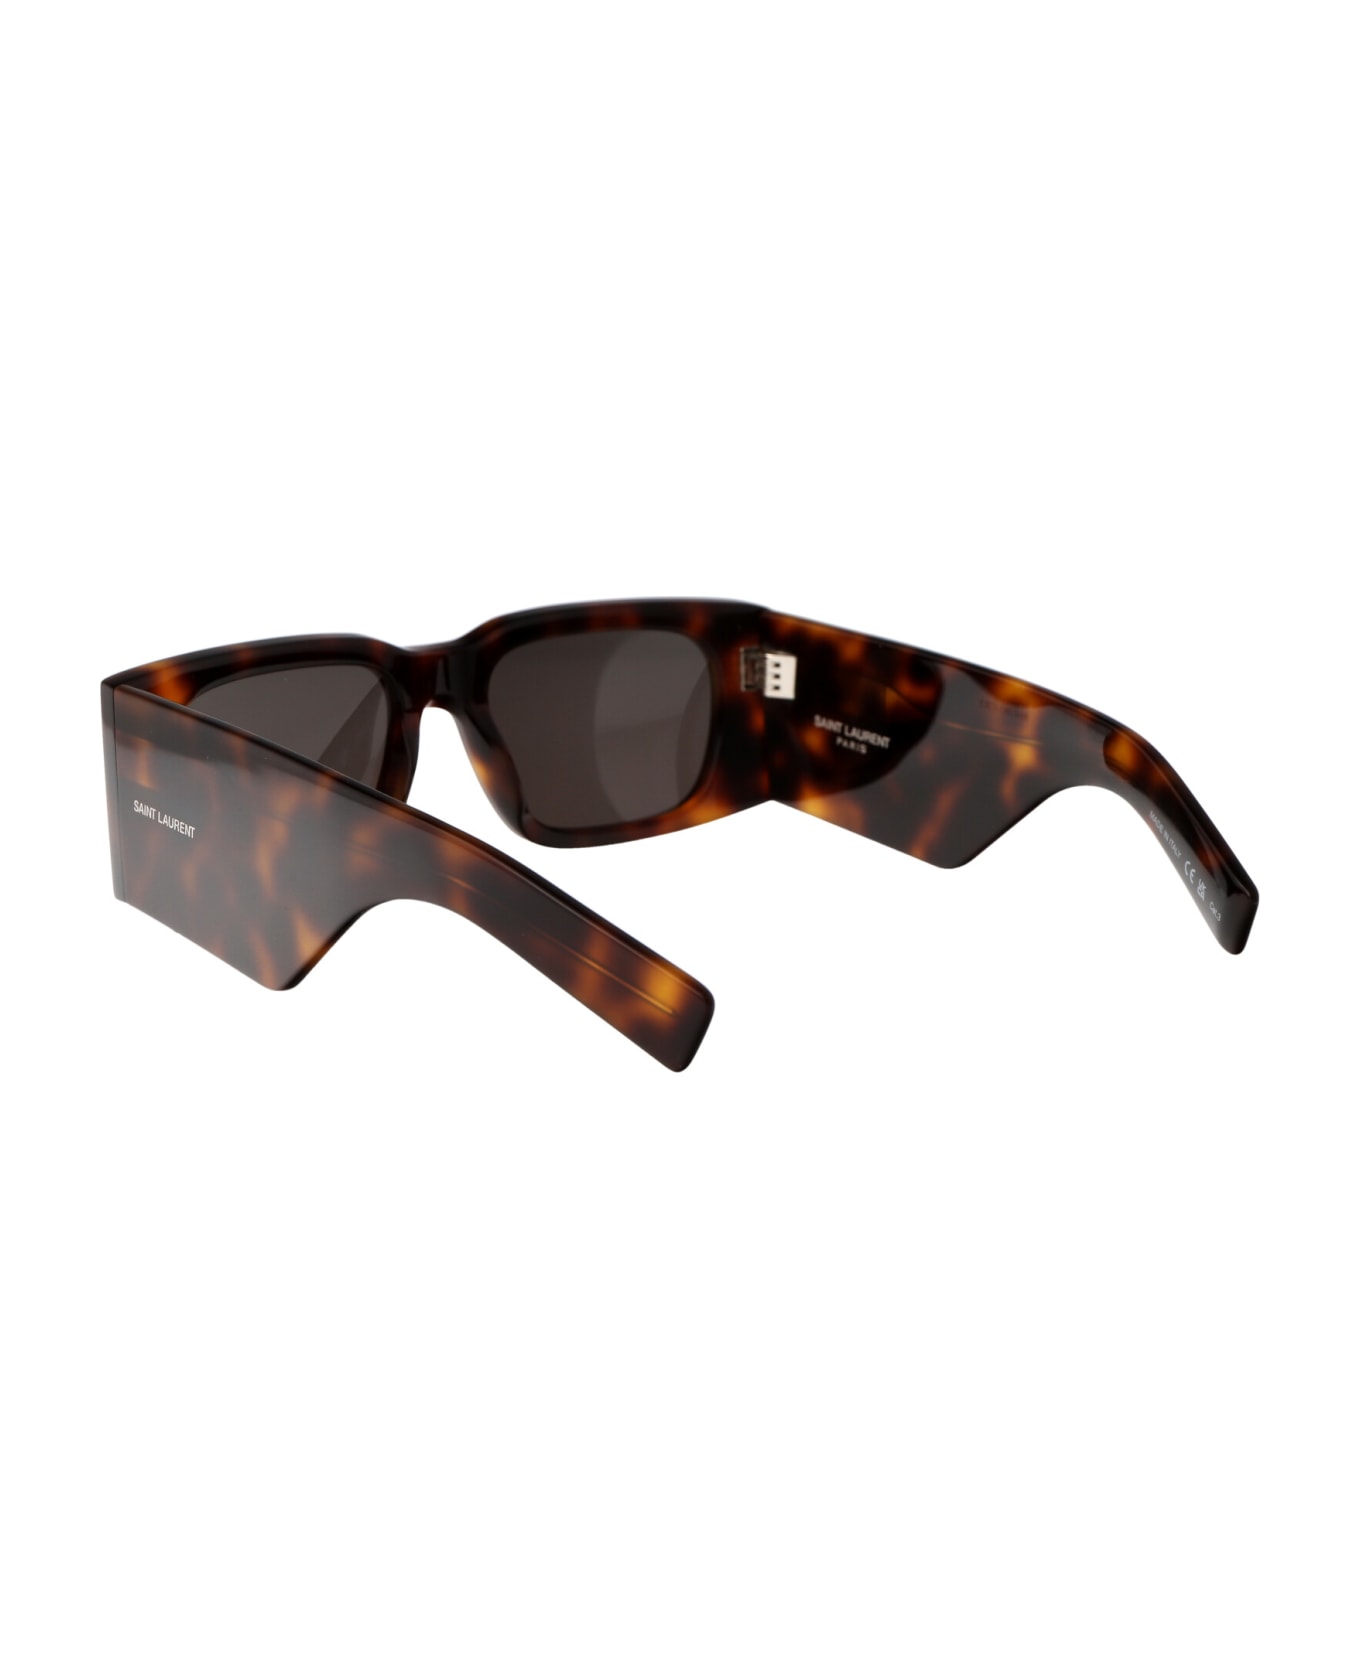 Saint Laurent Eyewear Sl 654 Sunglasses - 003 HAVANA HAVANA BLACK サングラス